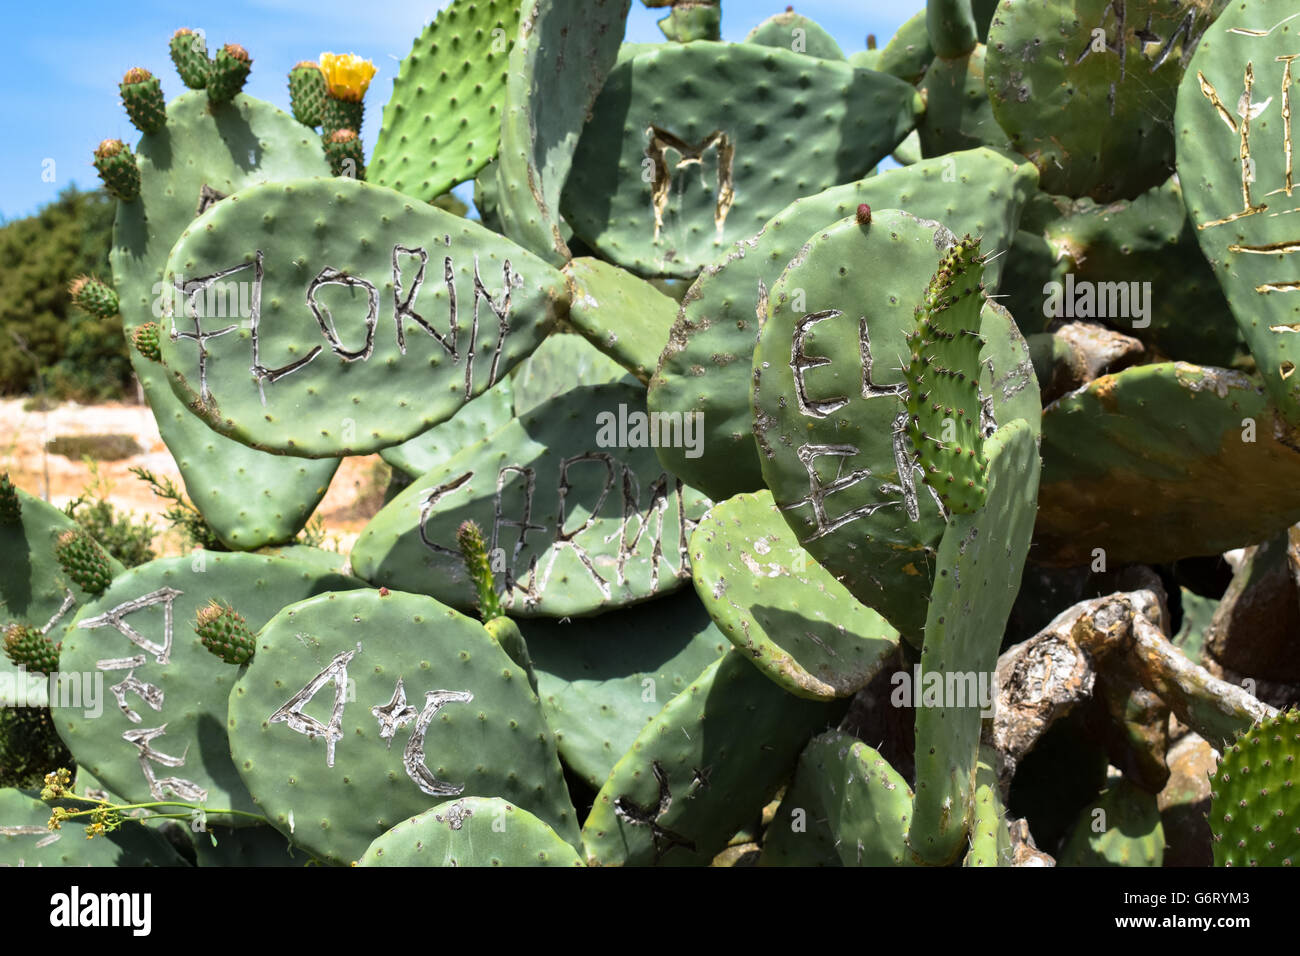 Graffiti names scored into prickly pear cactus leaves, Faro de la Mola, Formentera Stock Photo